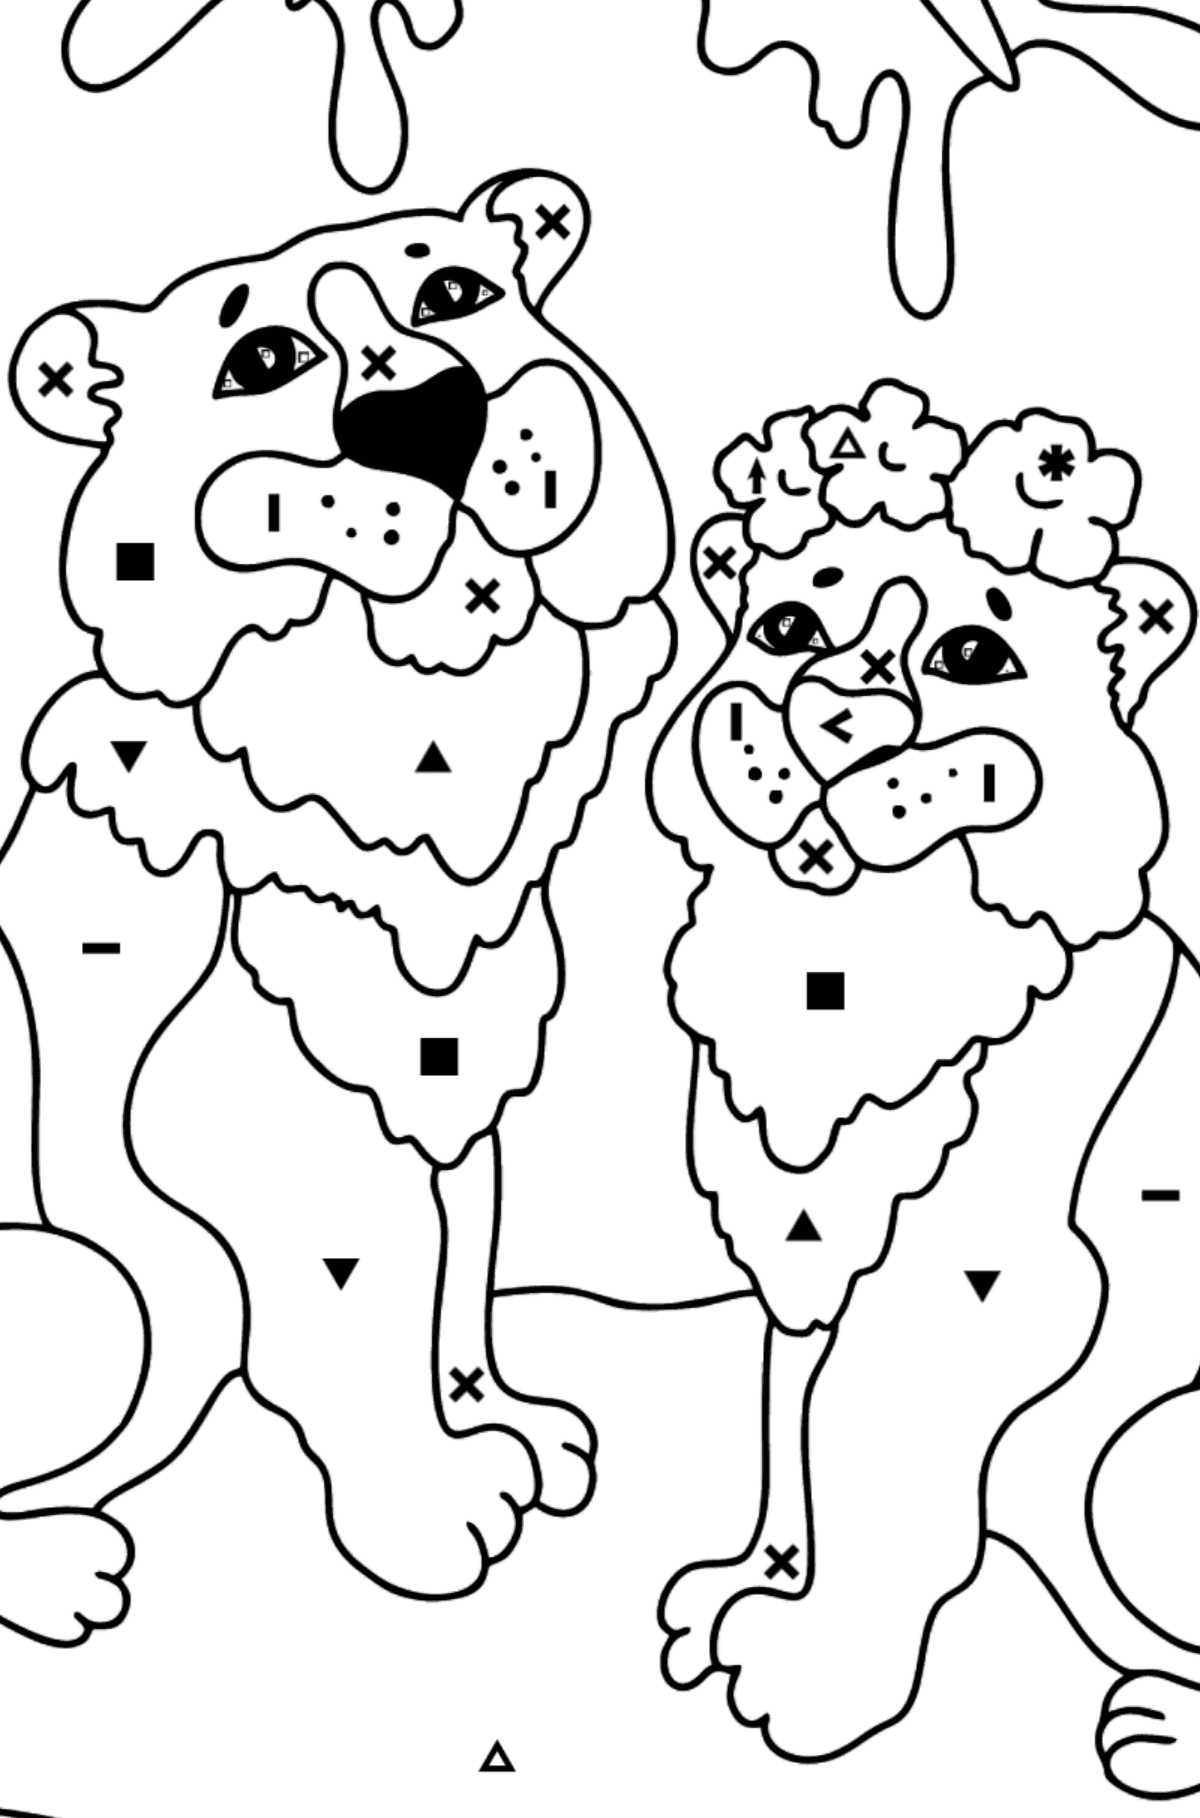 Värityskuva tiikeri ja tiikeri (vaikea) - Väritys Symbolien mukaan lapsille